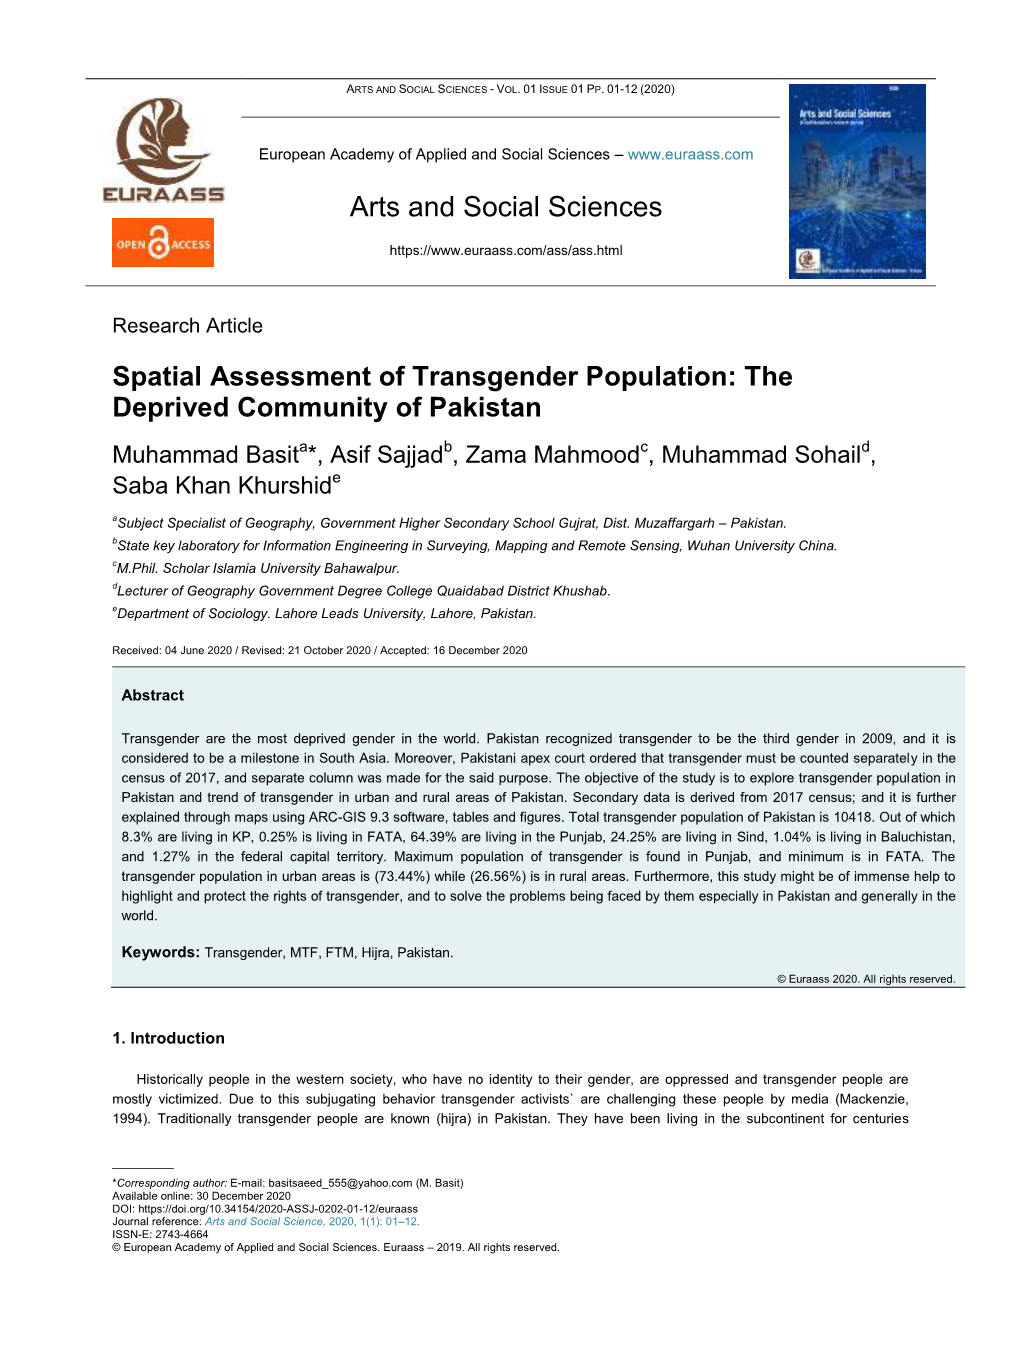 Spatial Assessment of Transgender Population